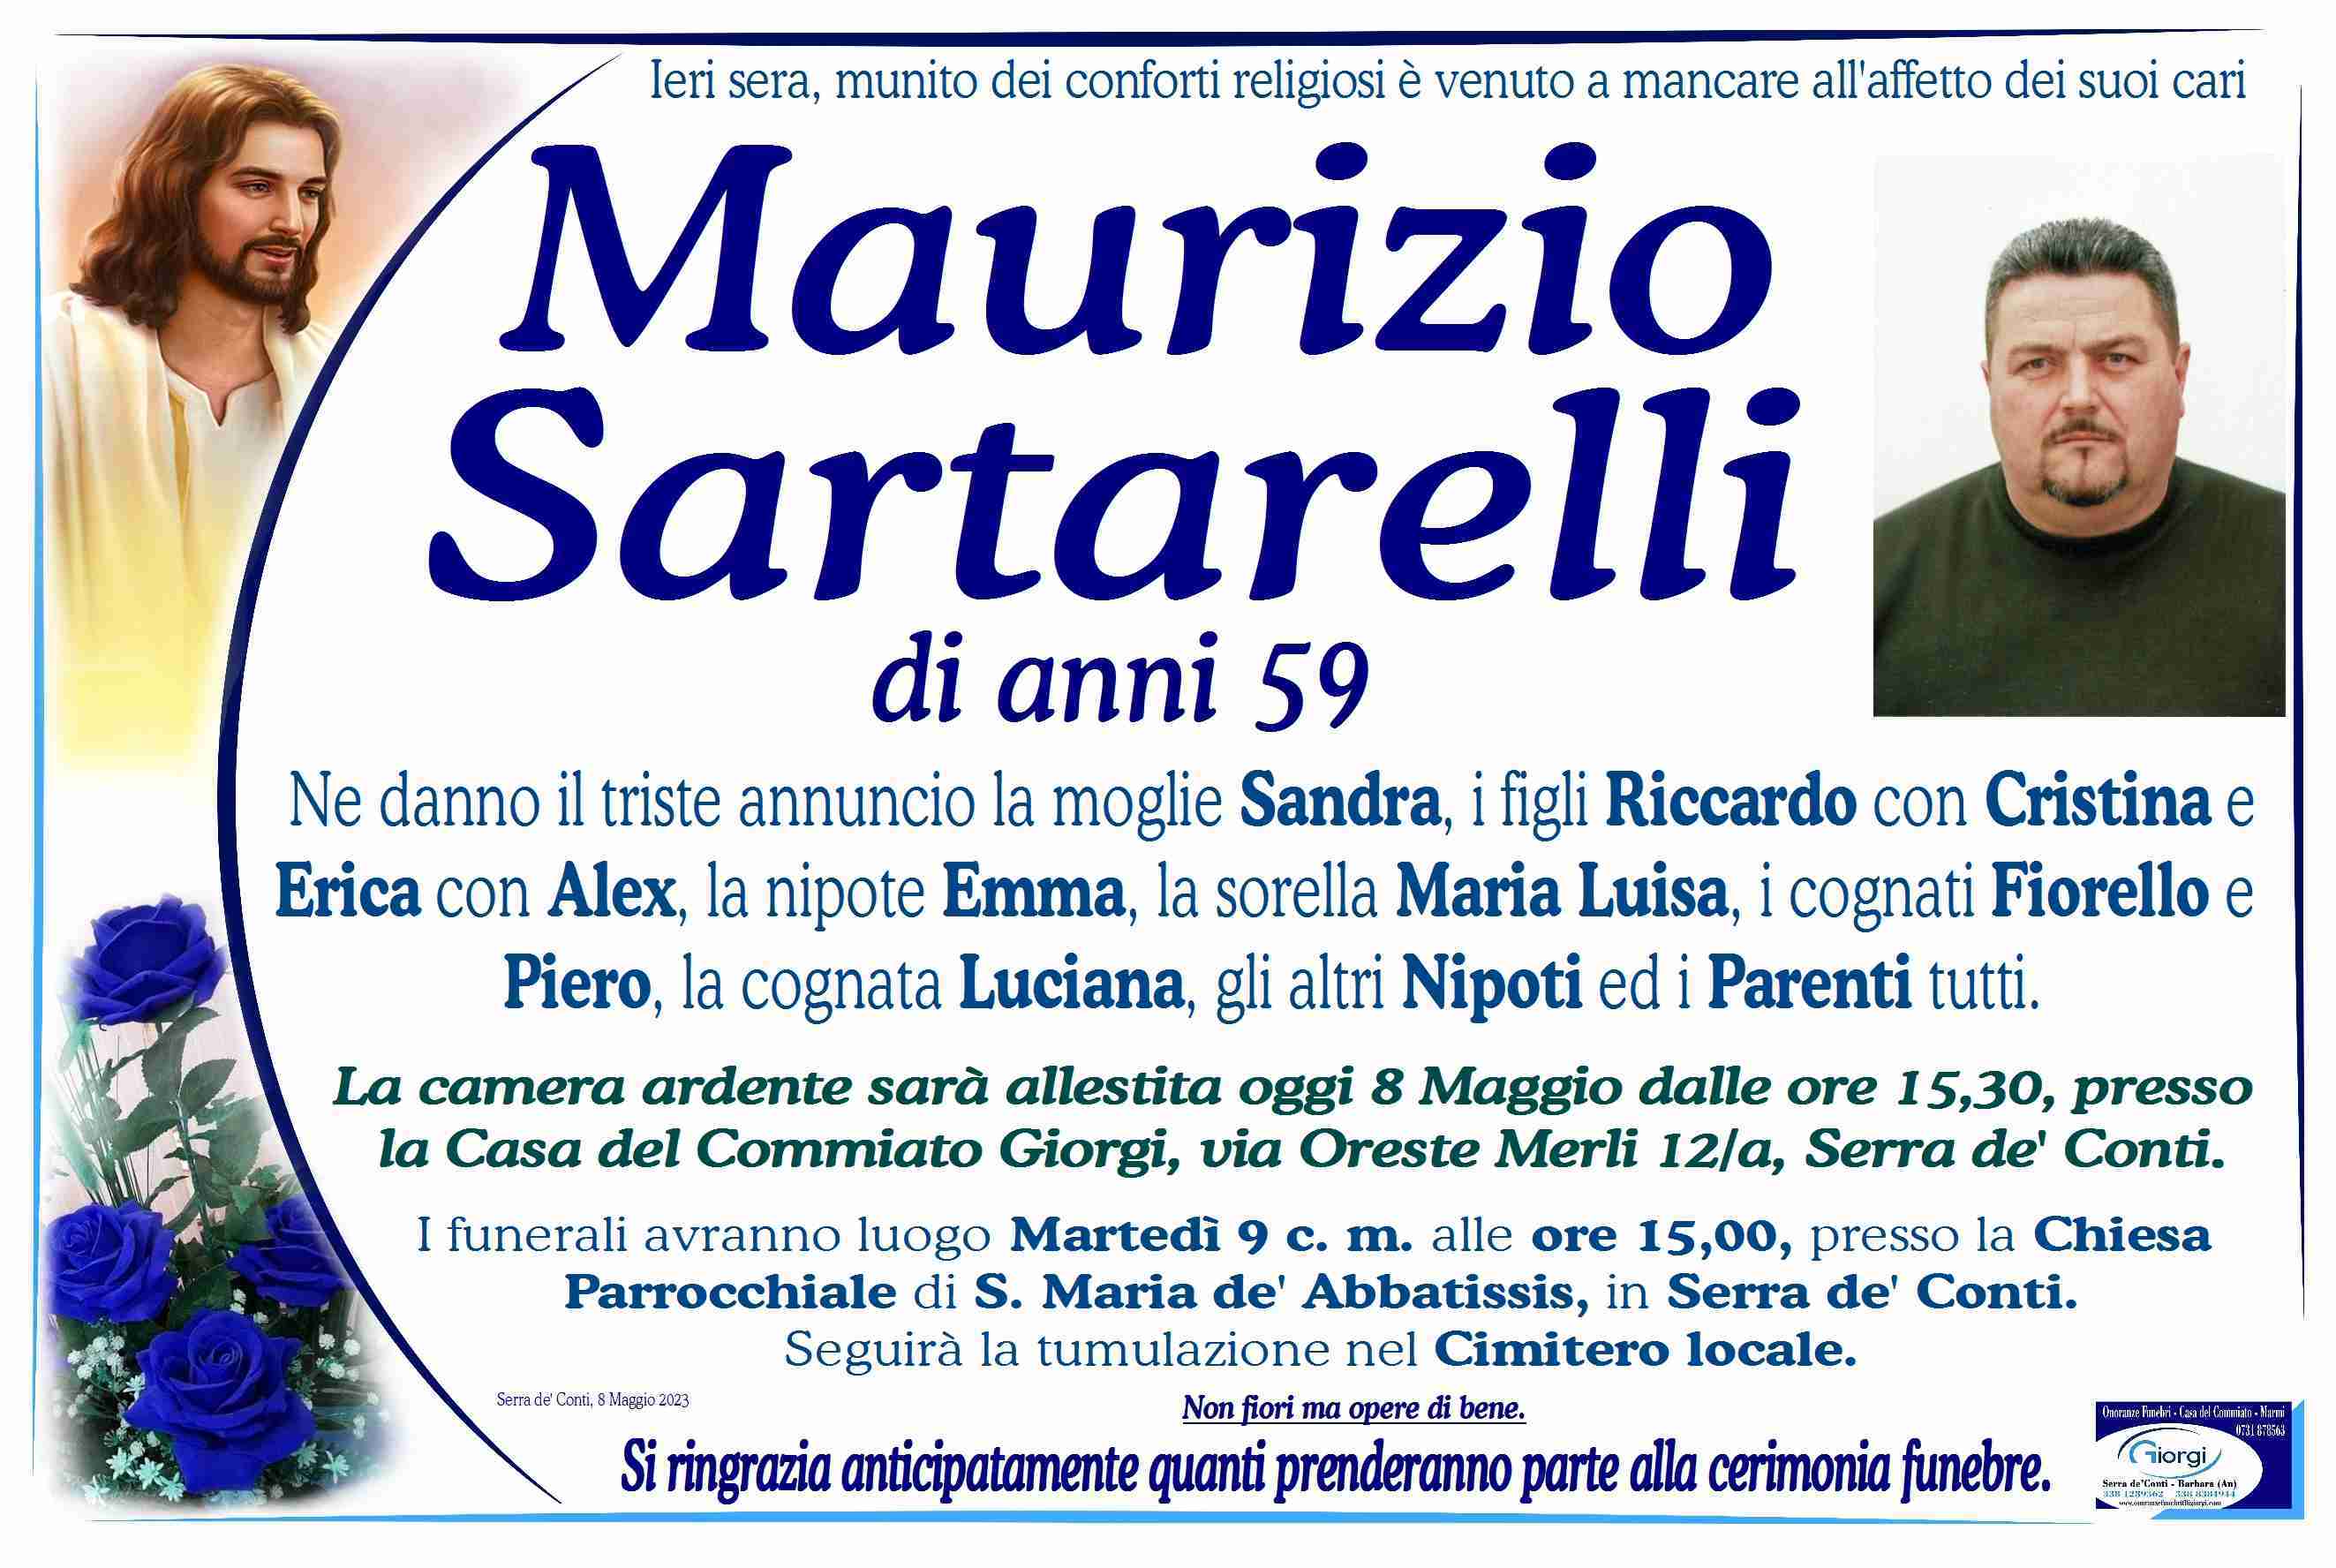 Maurizio Sartarelli